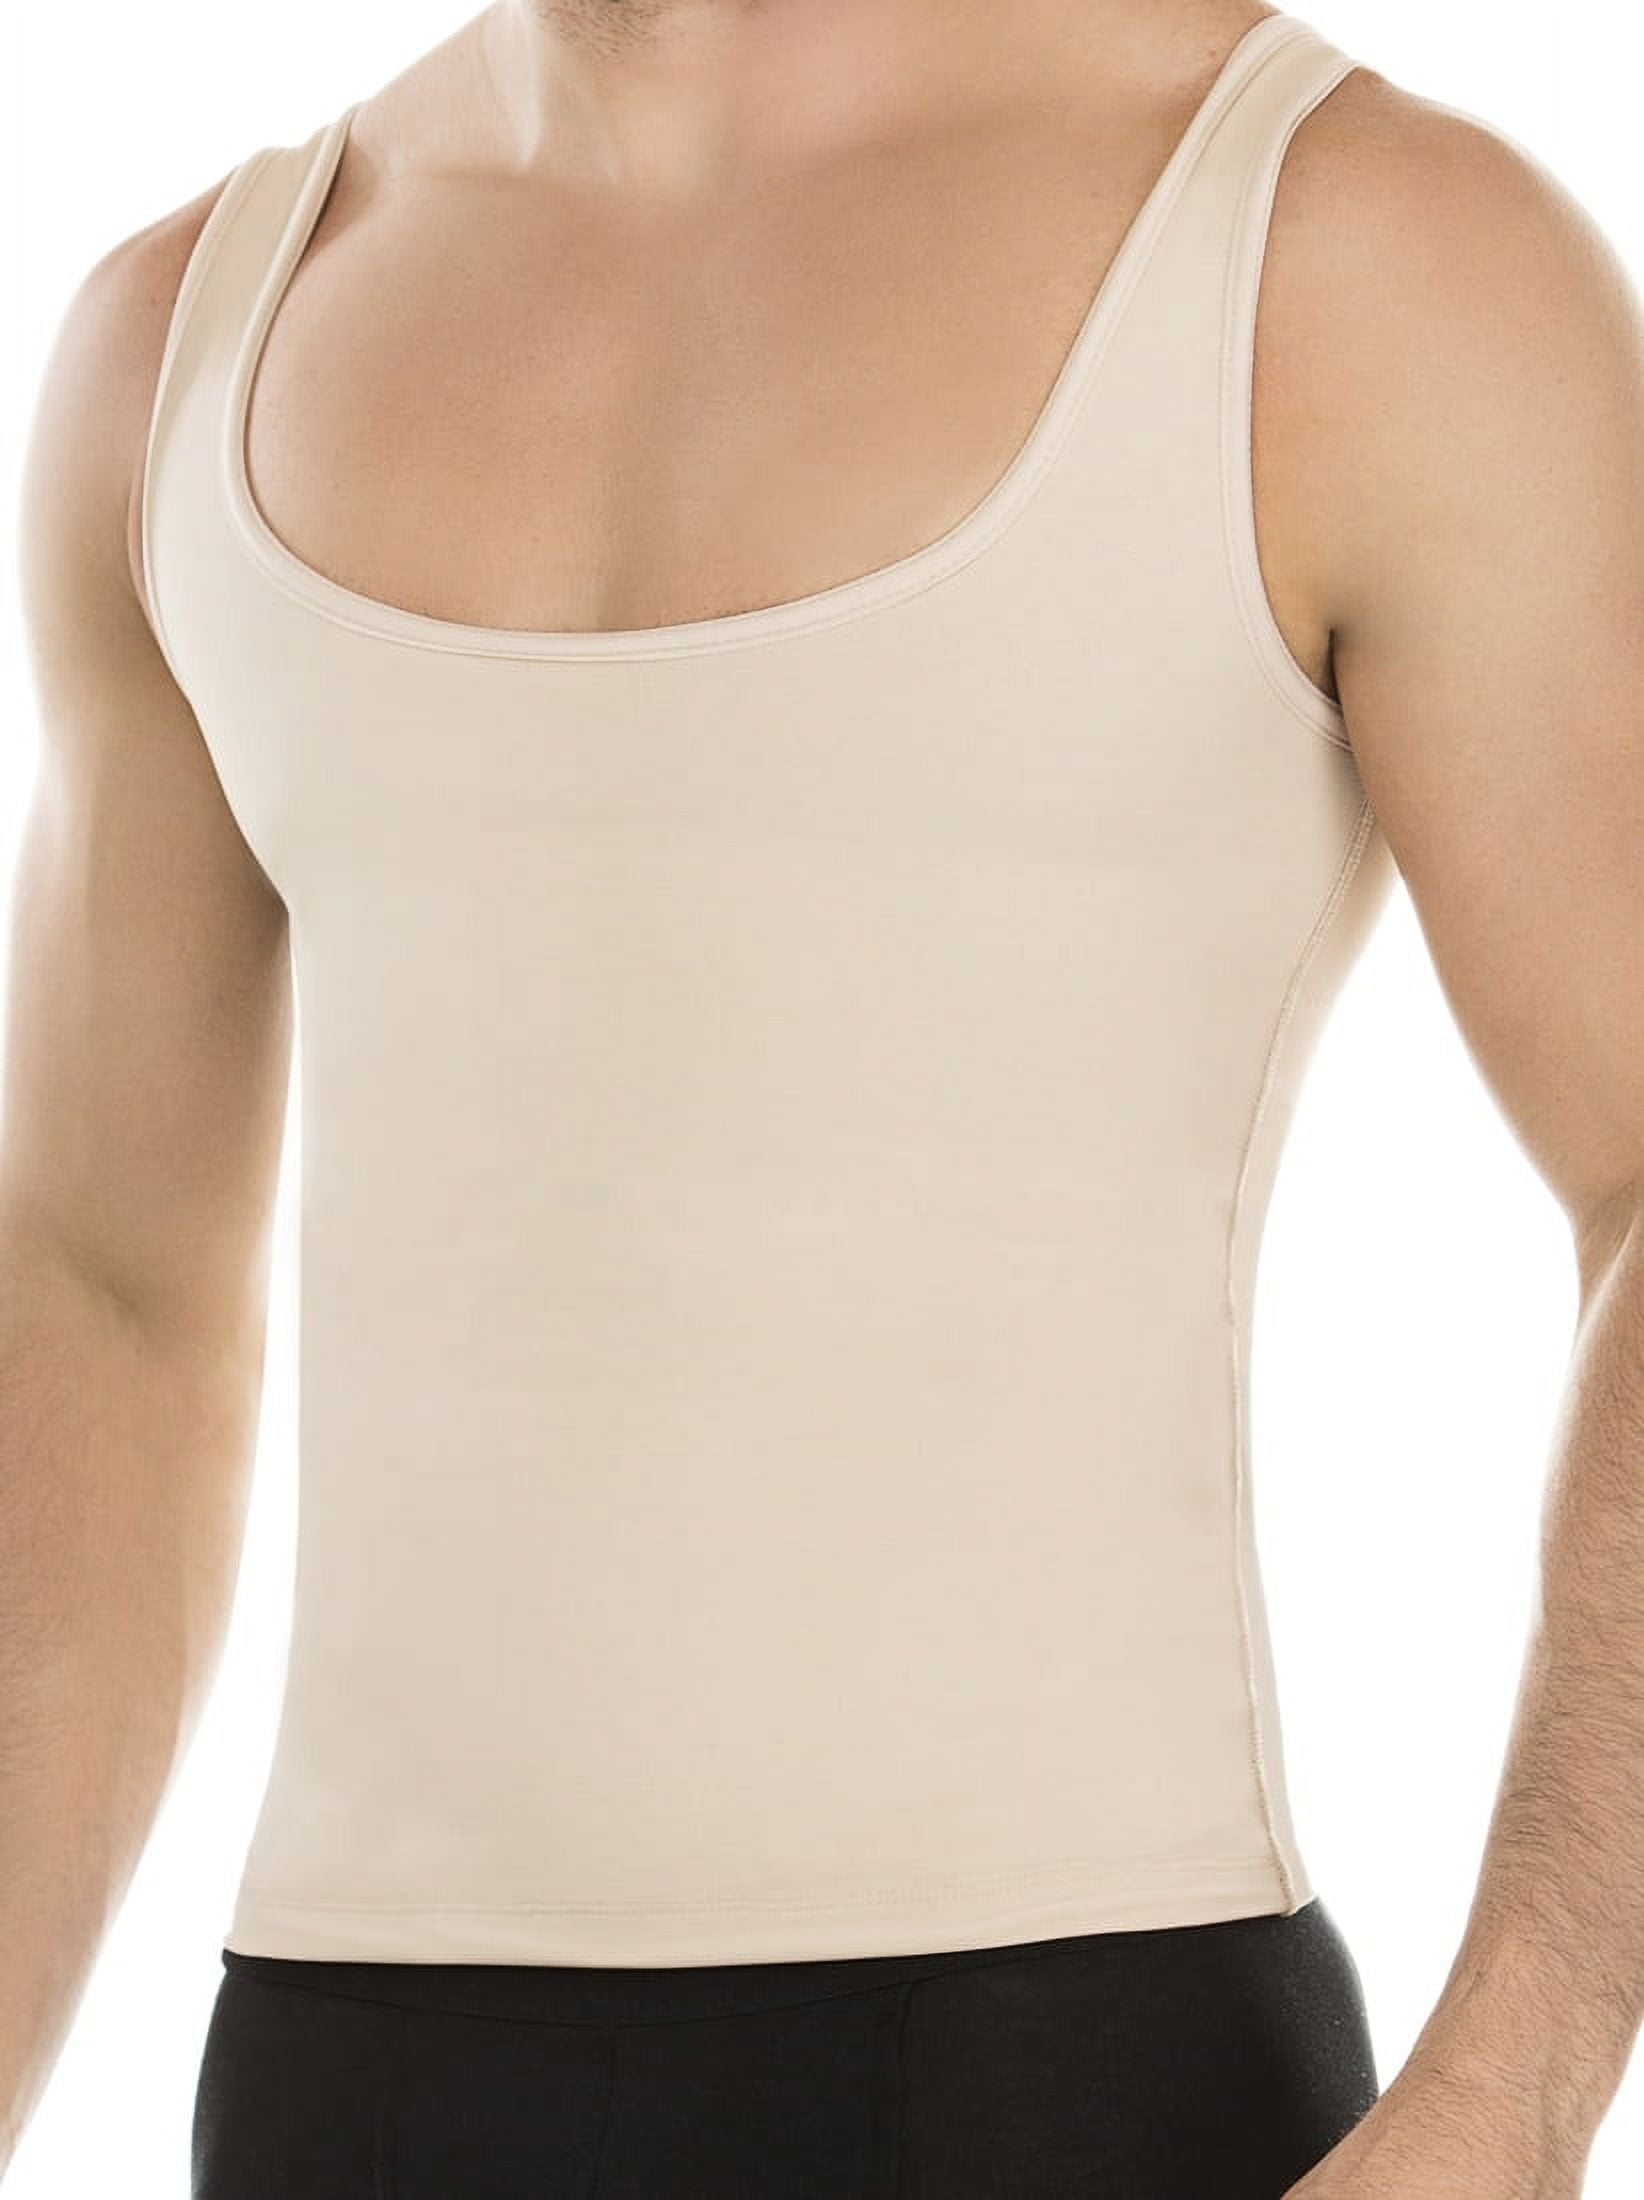 Faja Colombiana Body Shaper Underwear Girdle-Body Girdle for Men